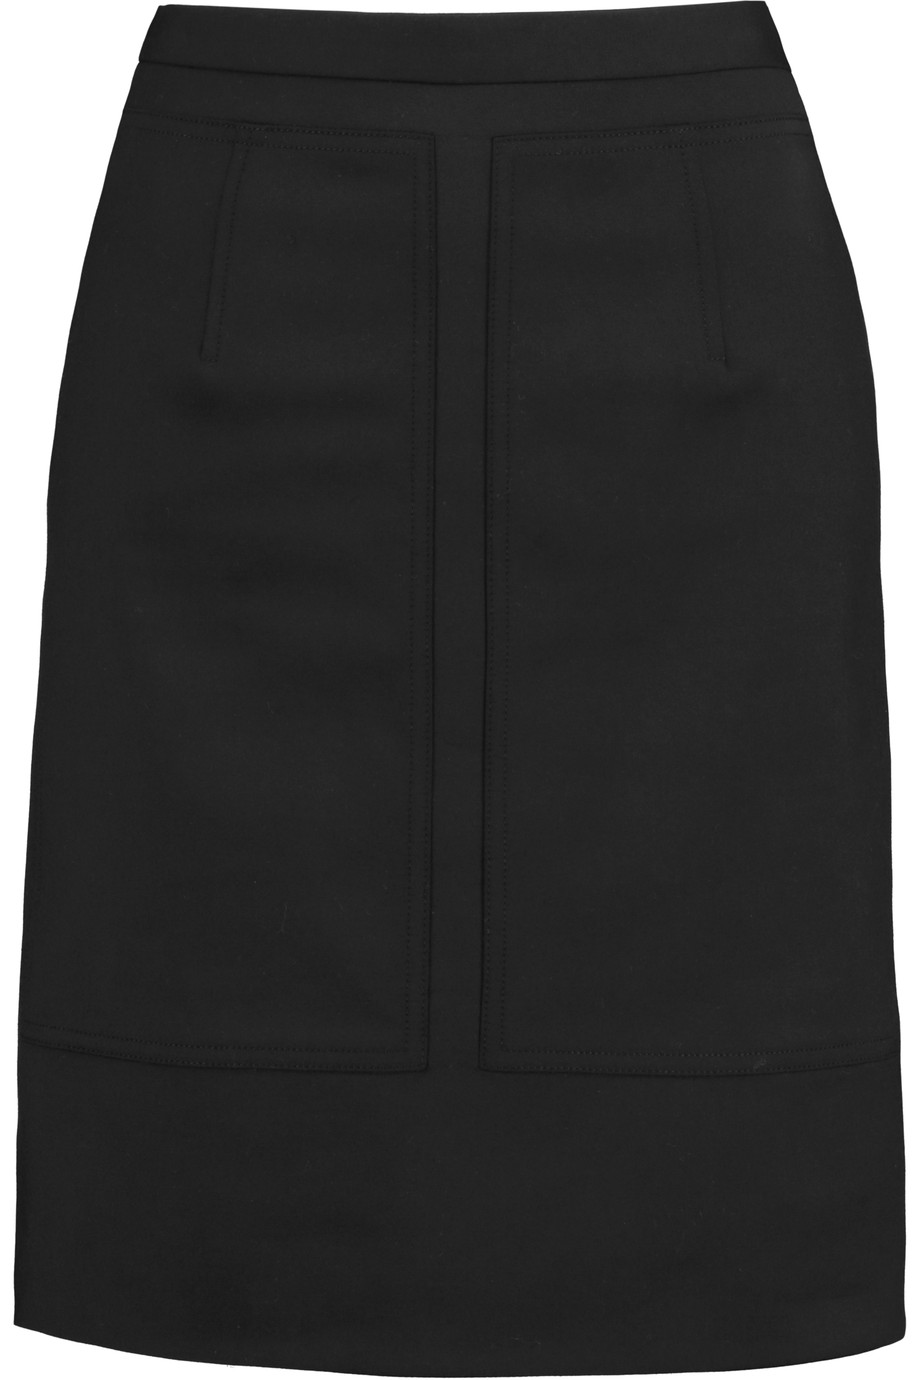 Alexander Wang Paneled Stretch-piqué Skirt | ModeSens